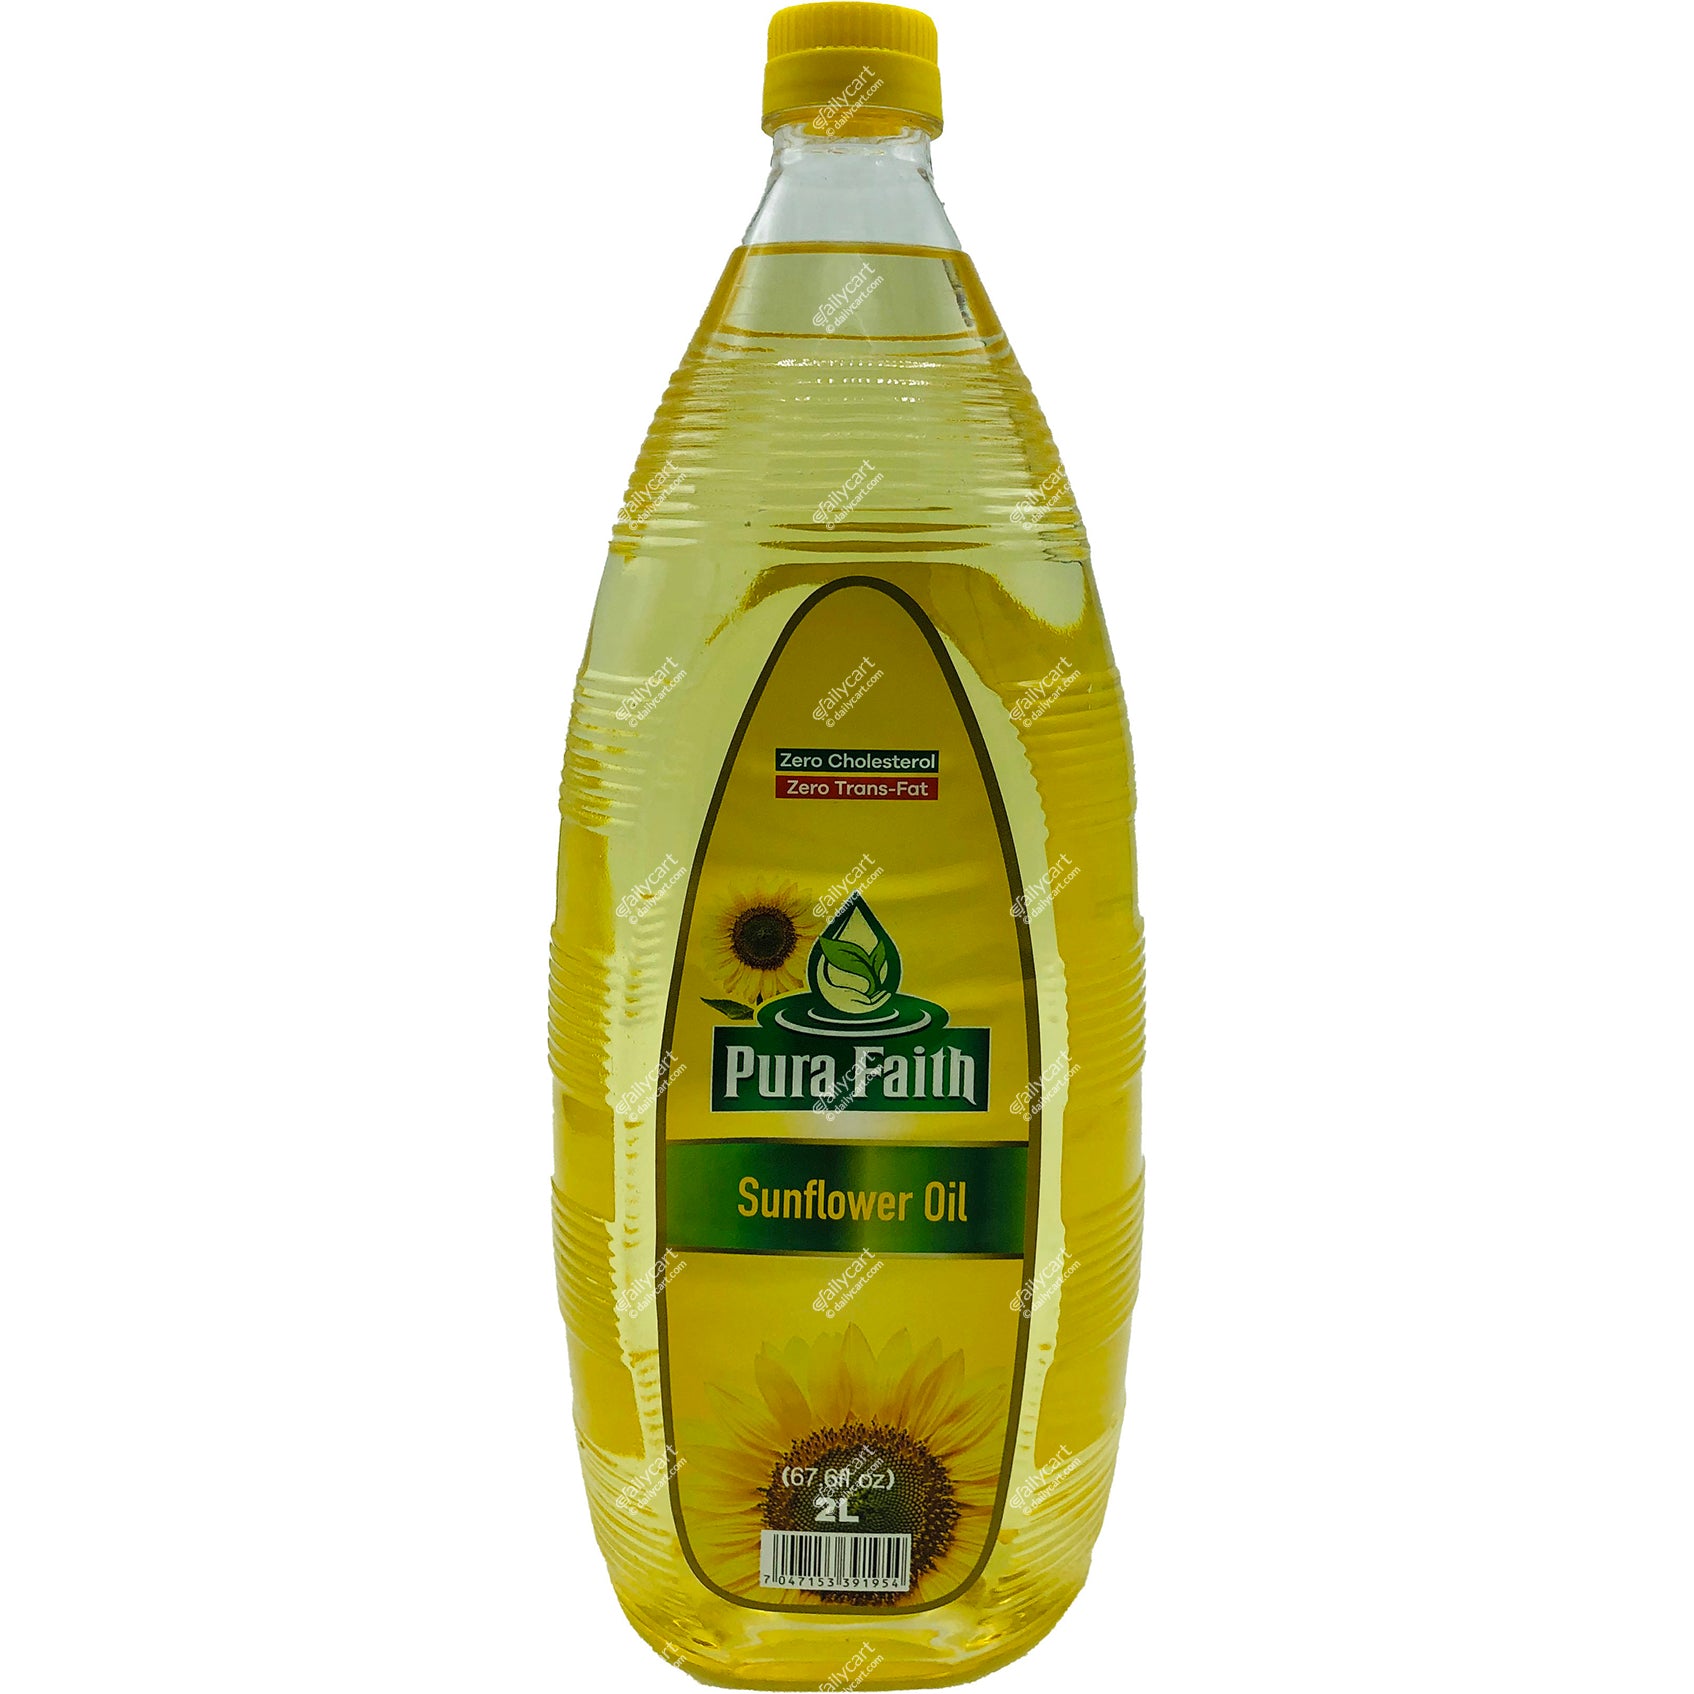 Pura Faith Sunflower Oil, 2 litre